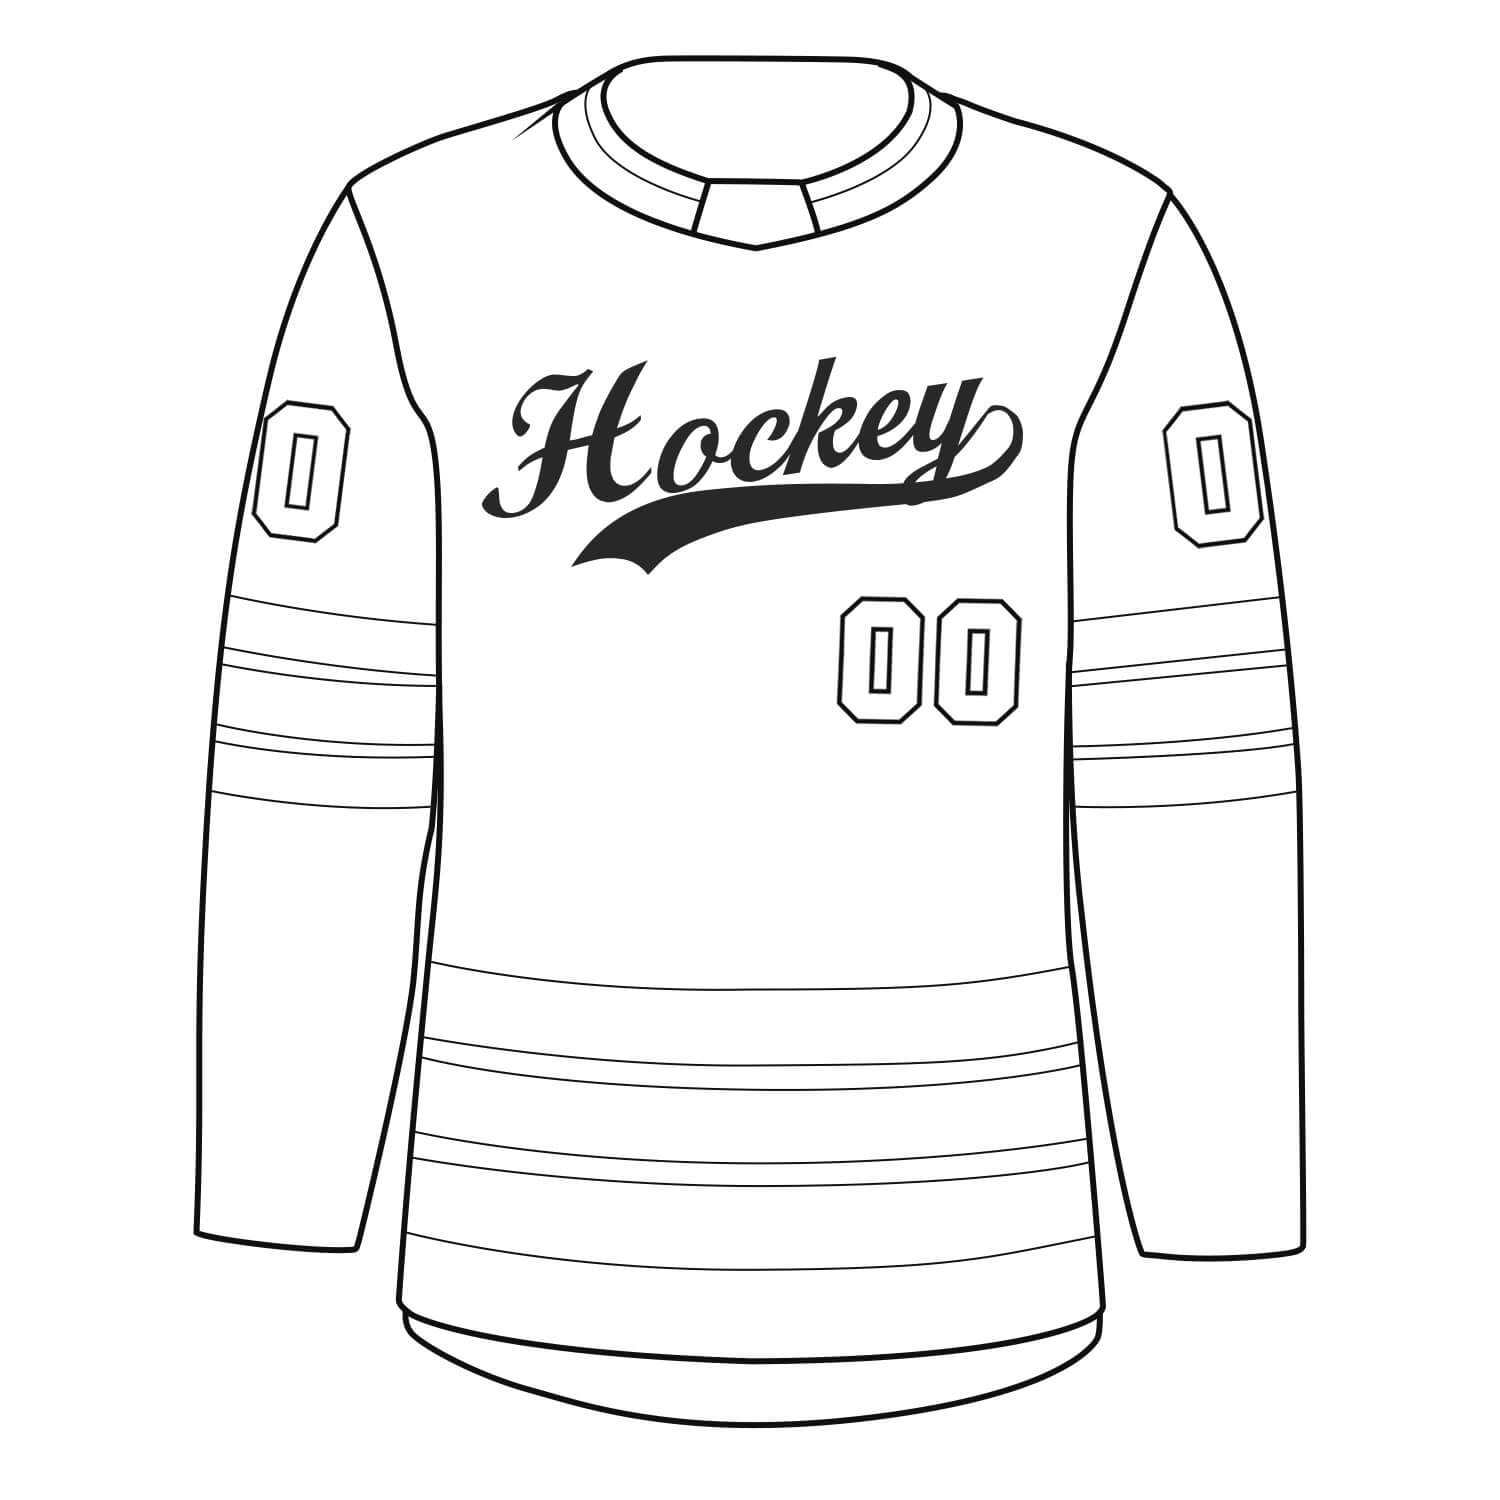 kxk-custom-hockey-jersey